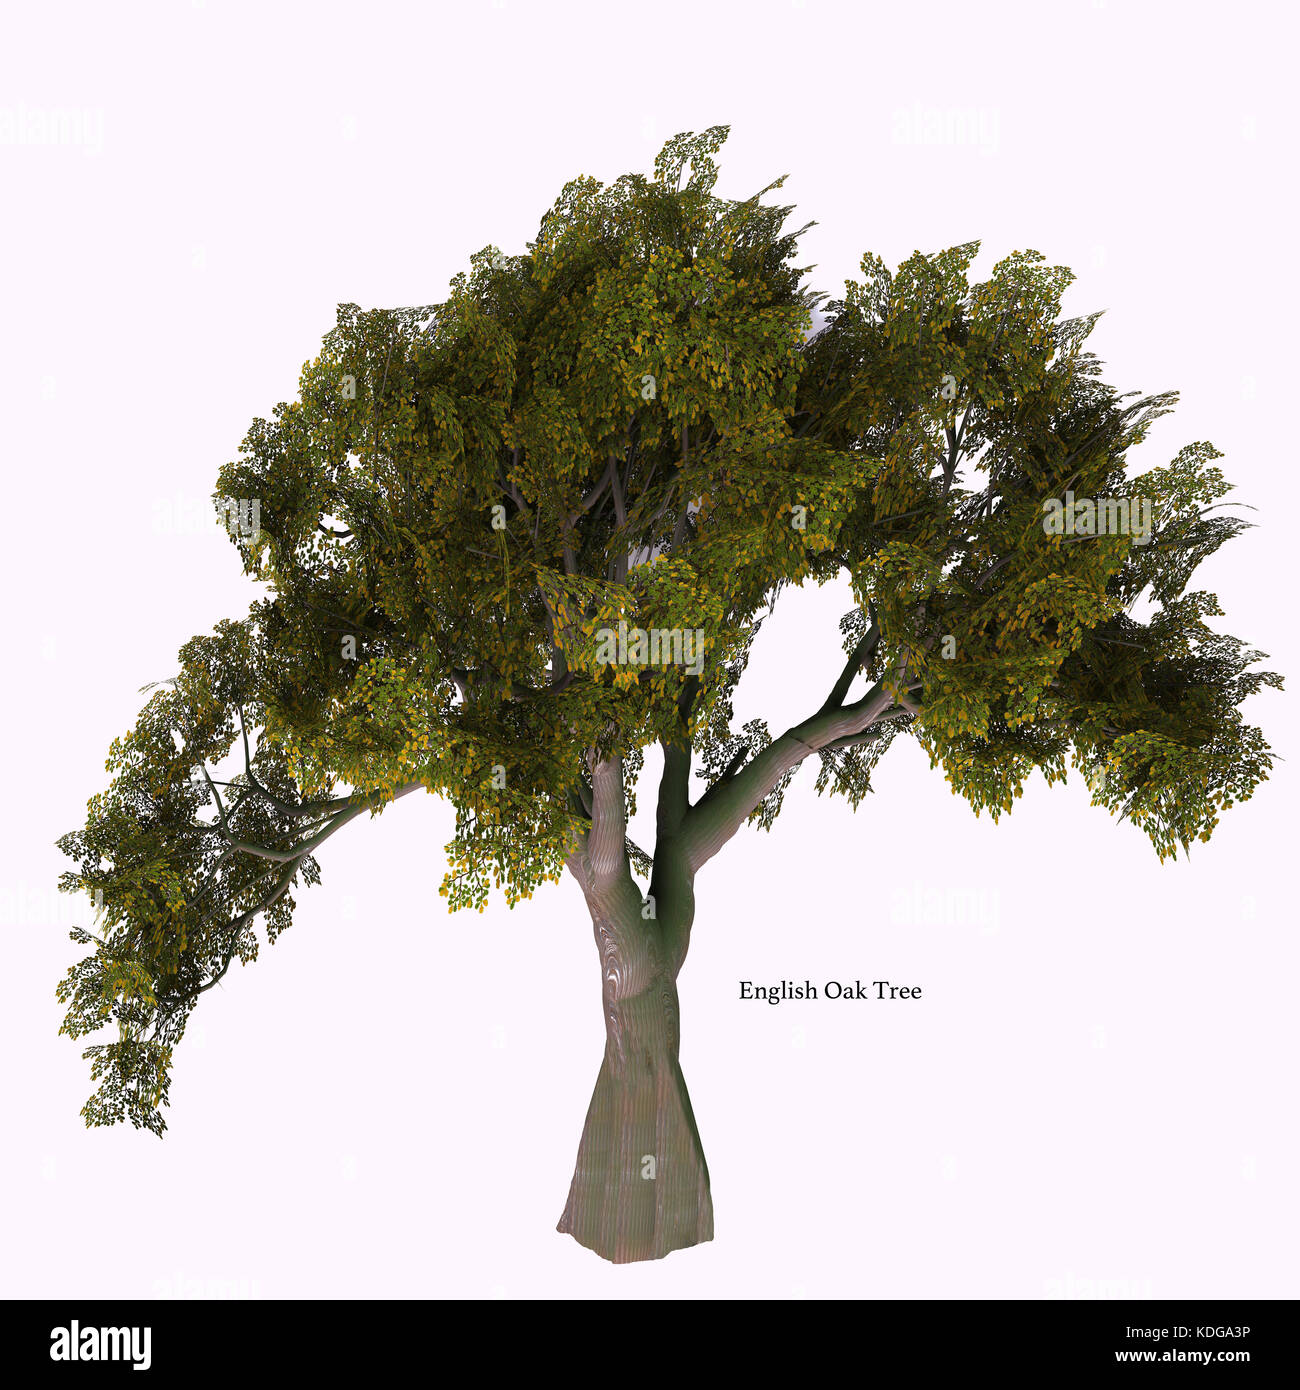 Arbre de chêne anglais avec police - l'arbre de chêne vient dans 600 différentes espèces comme une variété à feuilles caduques ou persistantes et développe un gland fruit l'écrou. Banque D'Images